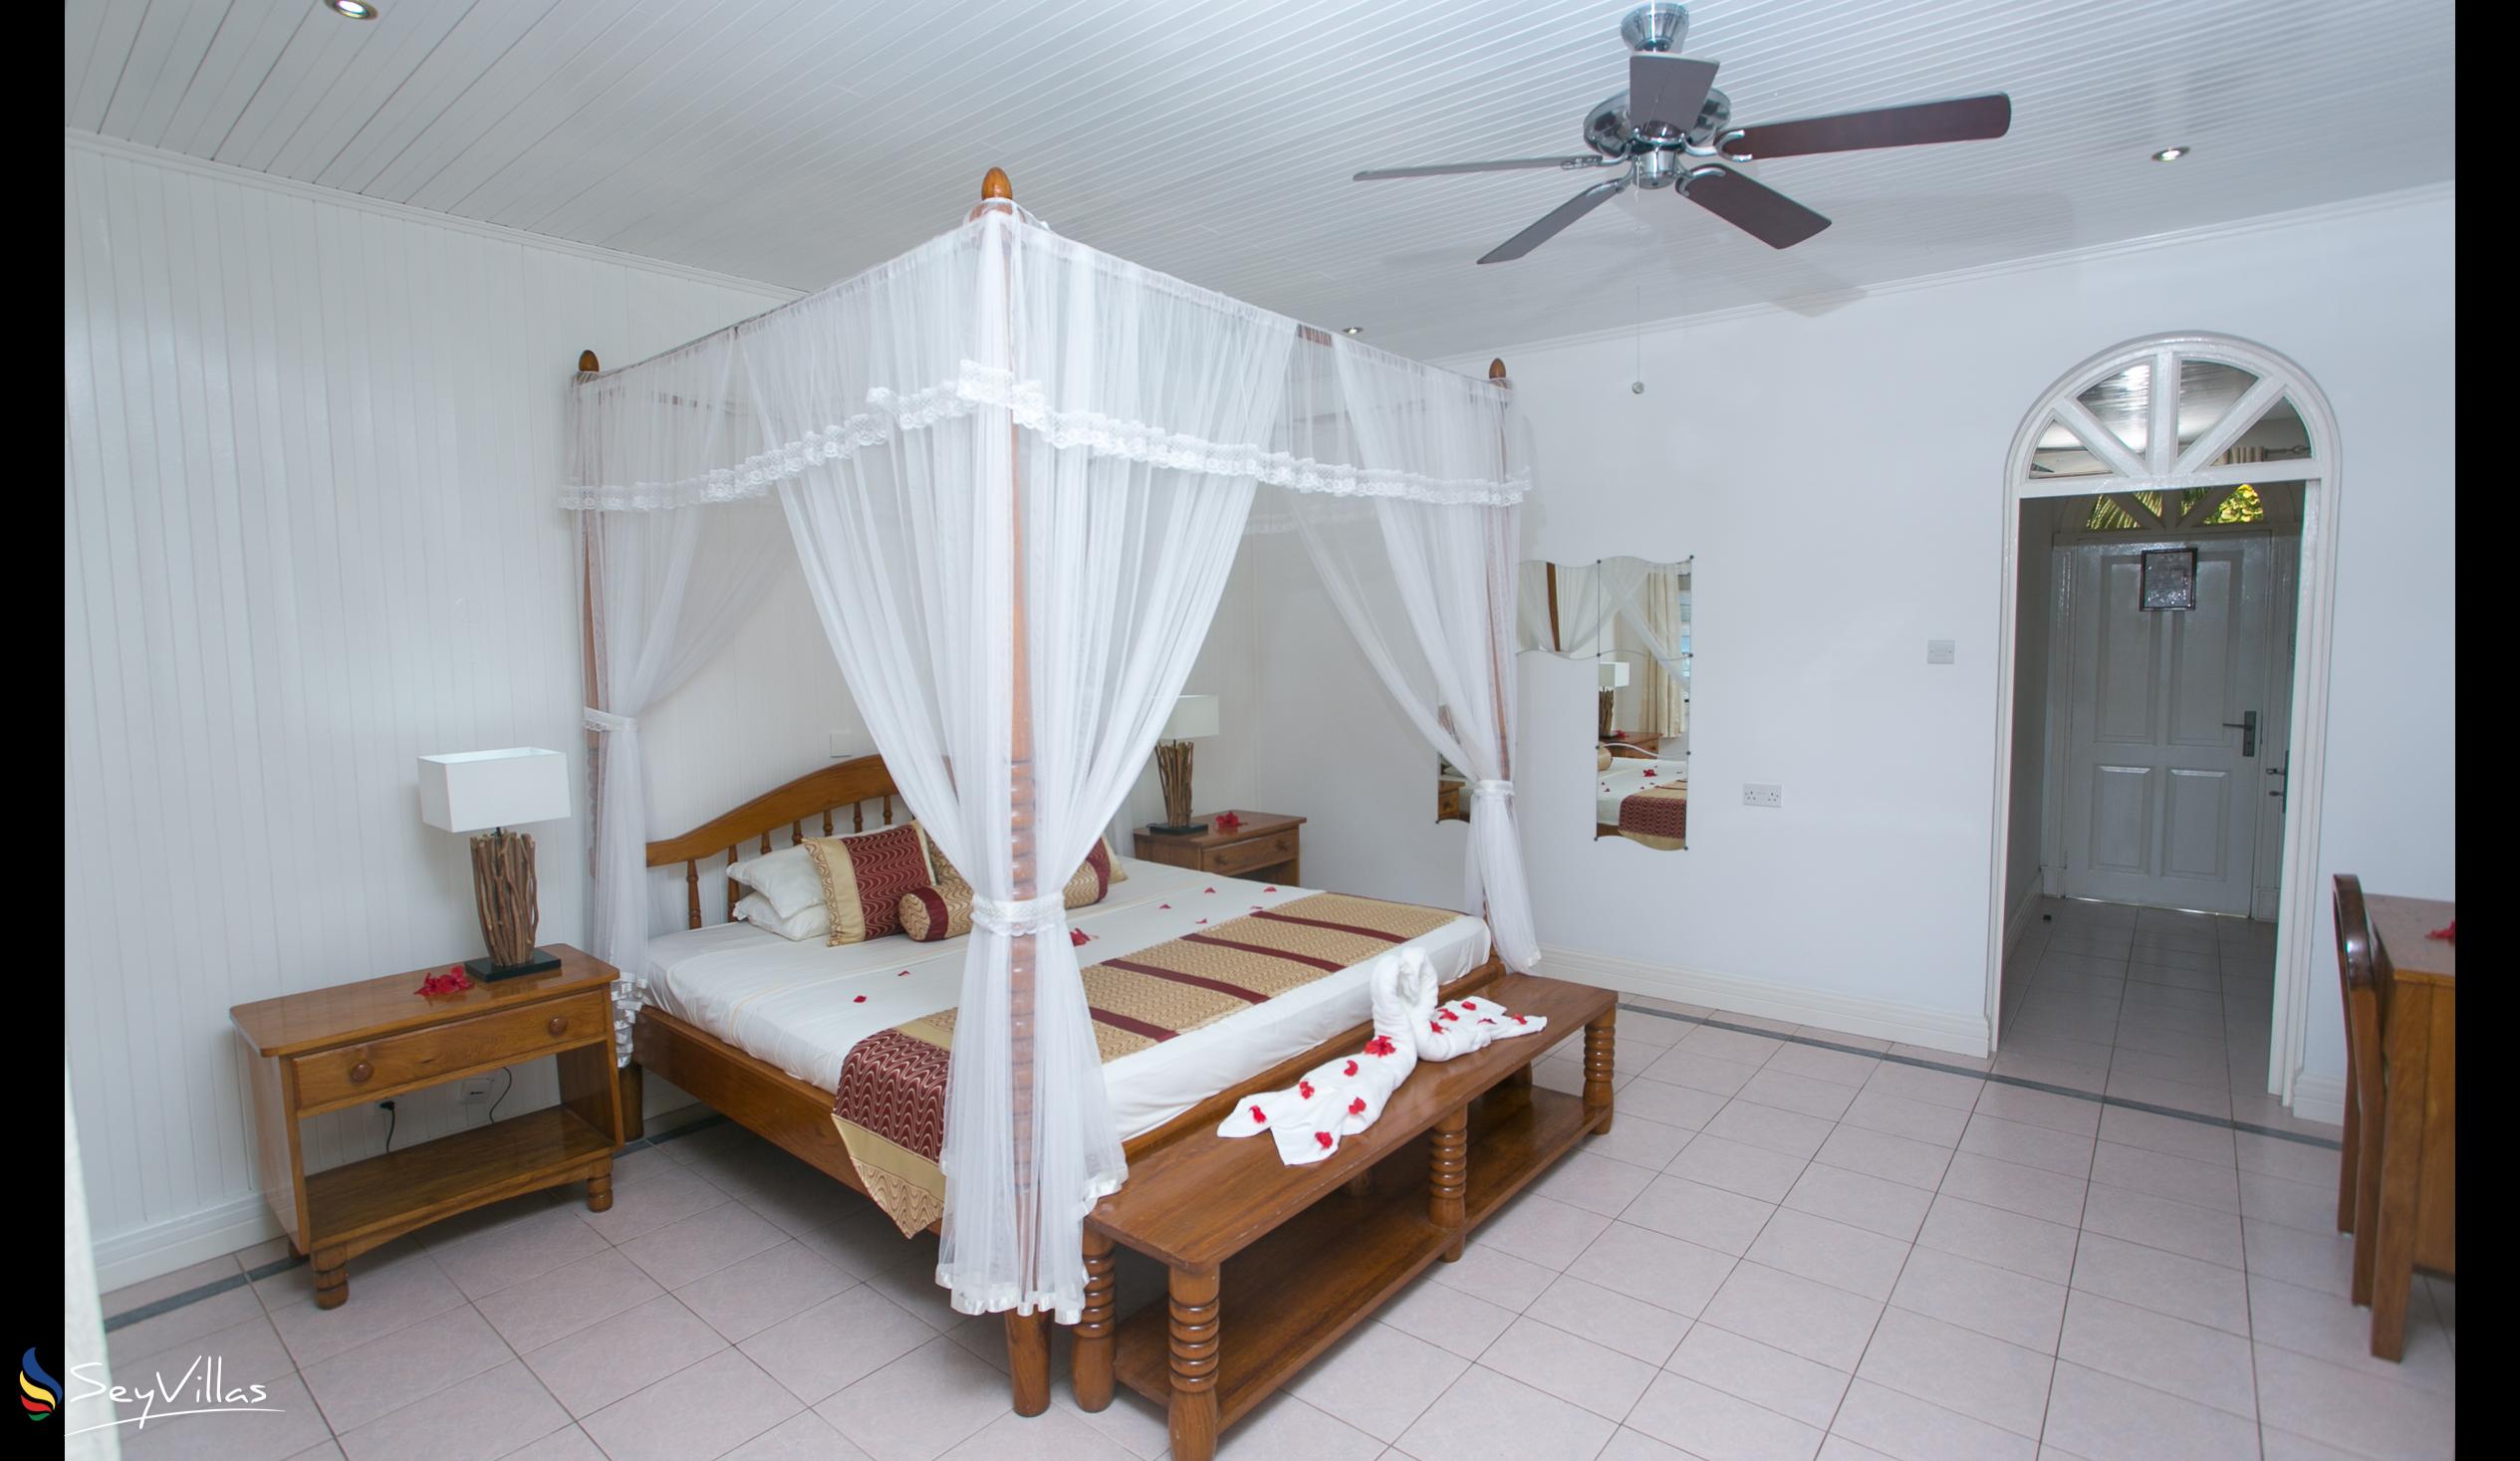 Photo 93: Le Domaine de La Reserve - Colonial Room - Praslin (Seychelles)